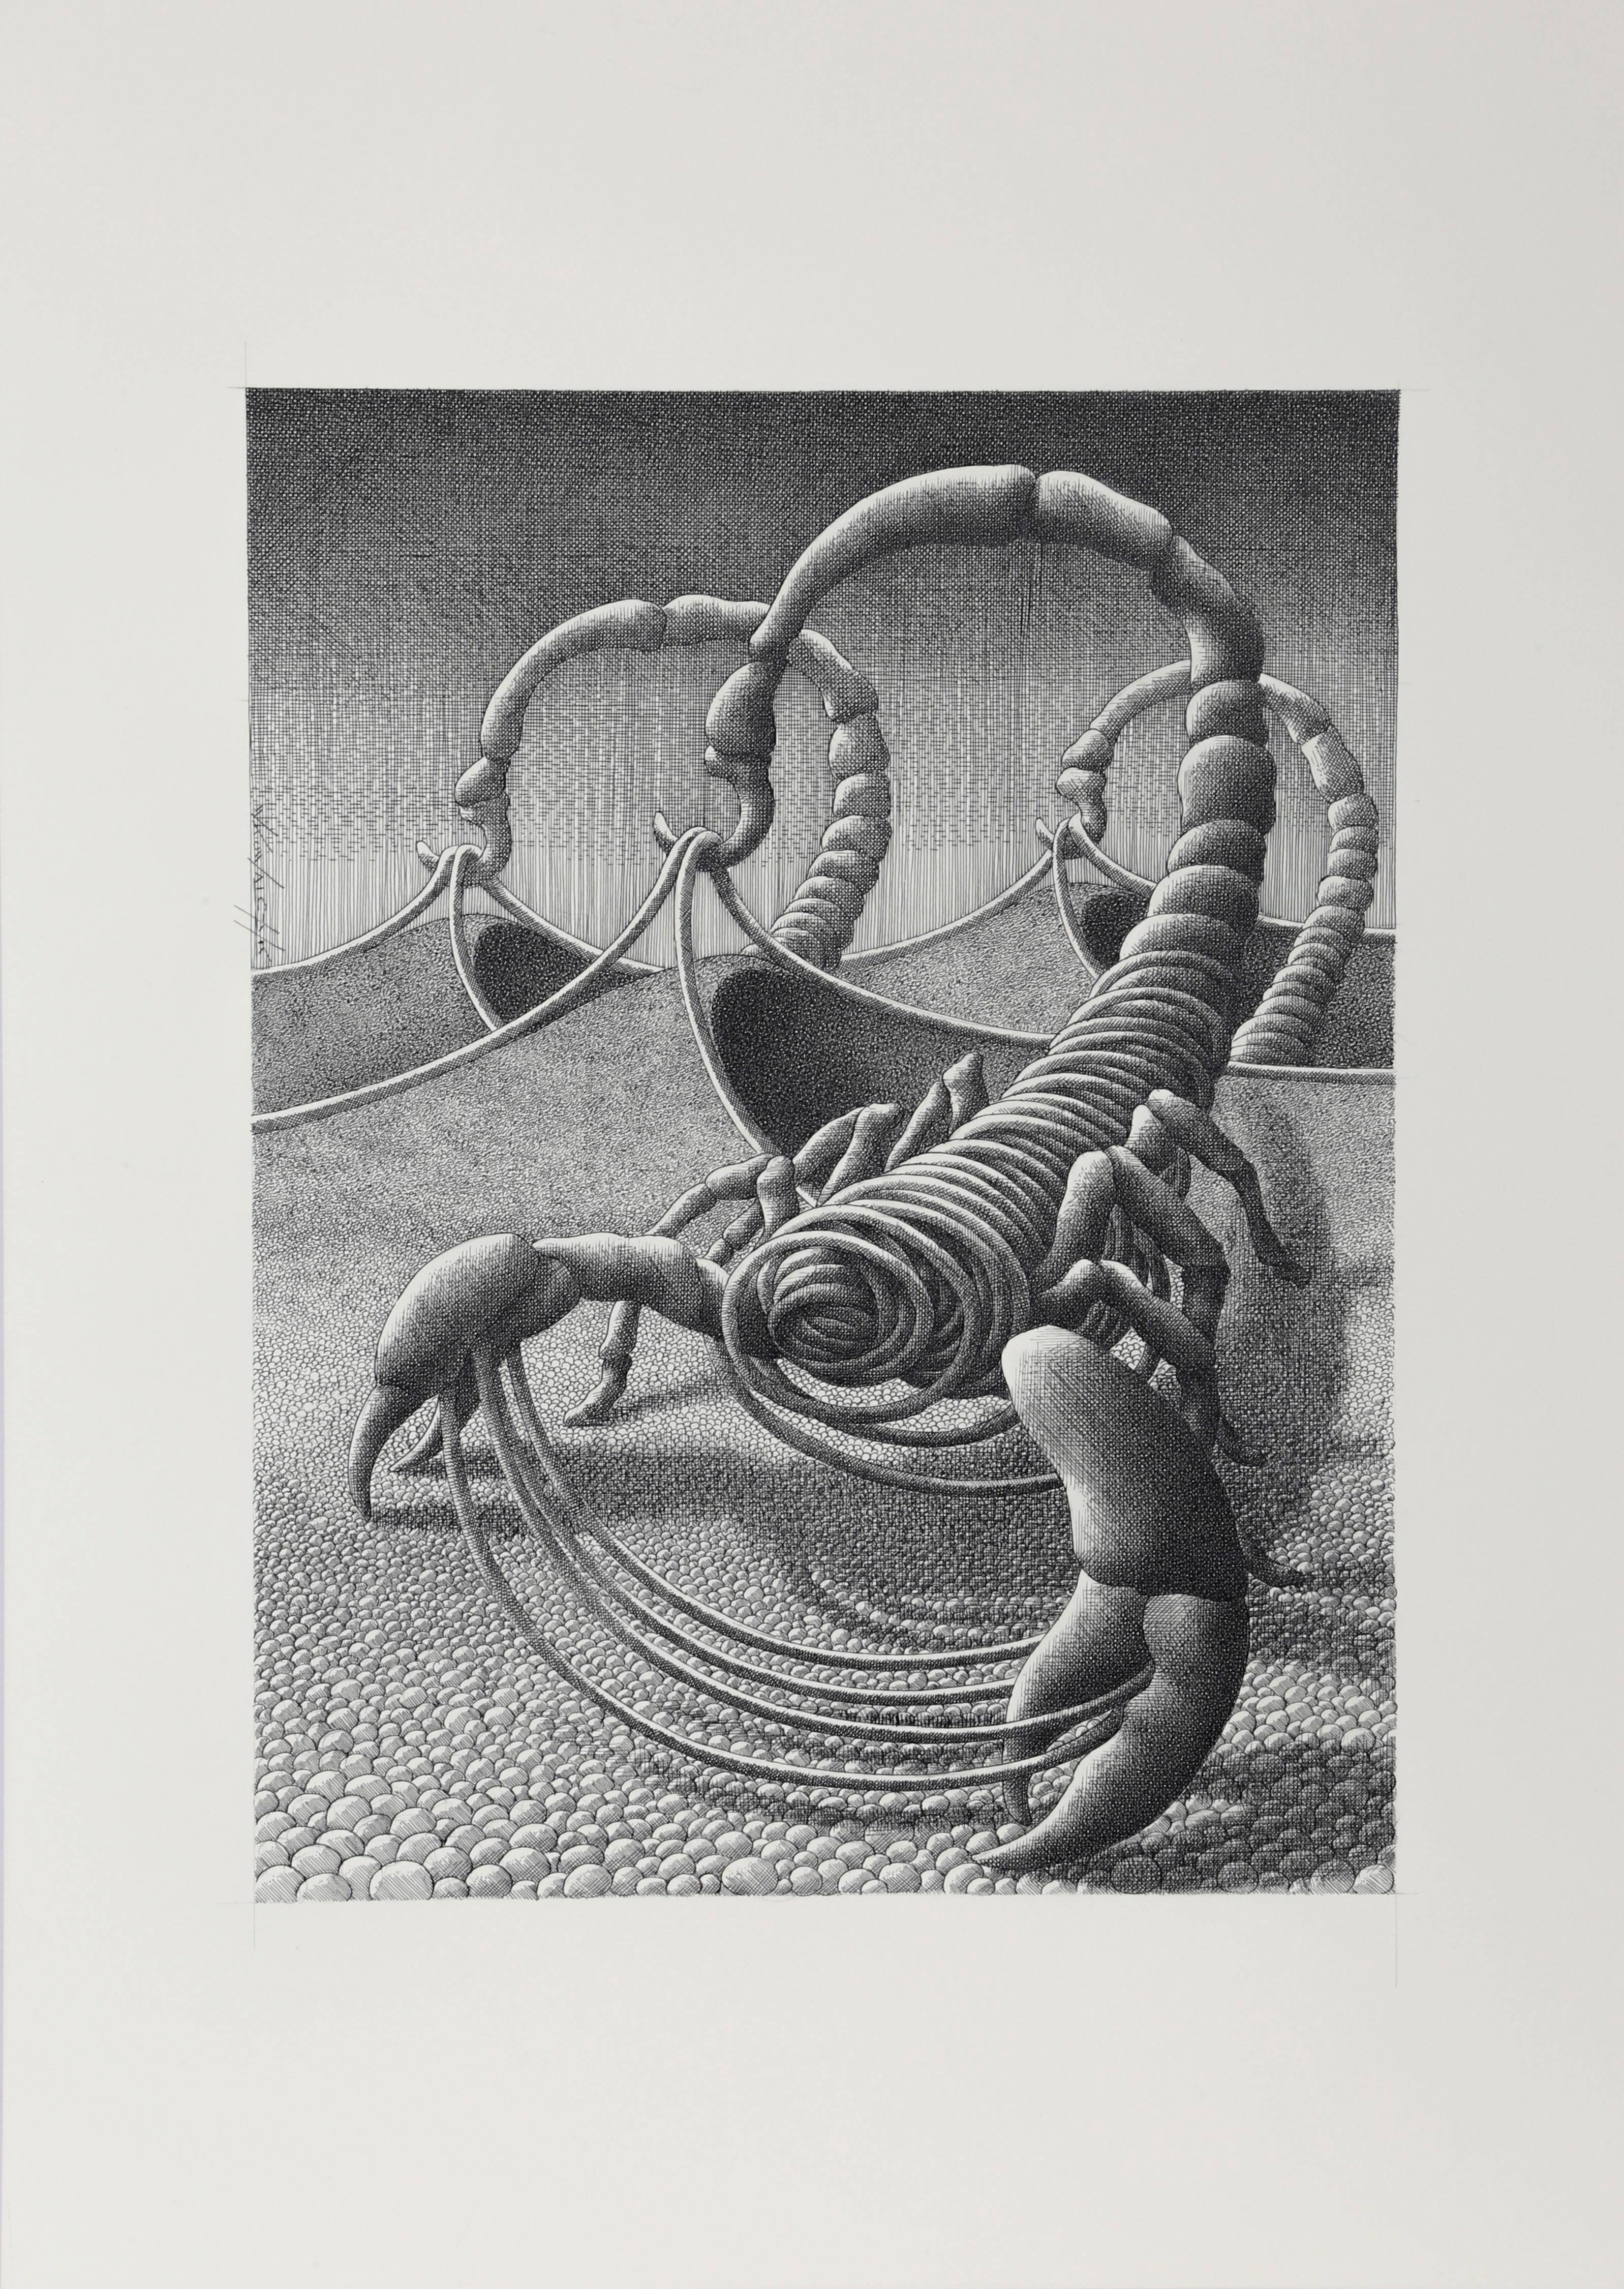 Ein detailliertes und handgezeichnetes Werk auf Papier des polnischen Künstlers Wojtek Kowalczyk mit Skorpionen in Sanddünen. Die Skorpione hingegen bestehen aus verschlungenen Seilen, die an ihren hakenförmigen Schwänzen von den Dünenkämmen gezogen